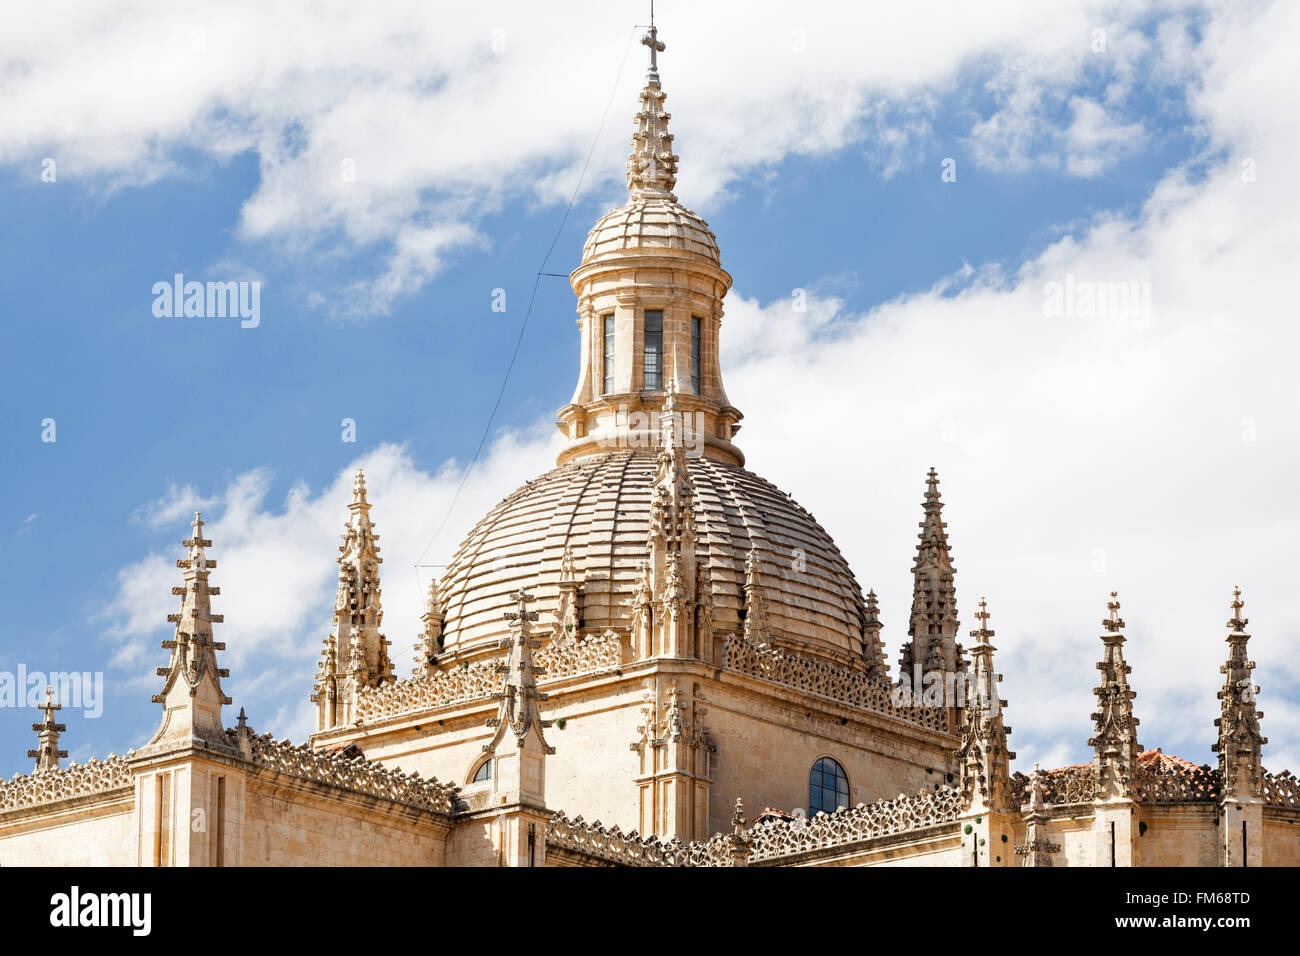 Une vue extérieure d'un édifice religieux, le dôme de la cathédrale de Ségovie, Espagne. Banque D'Images